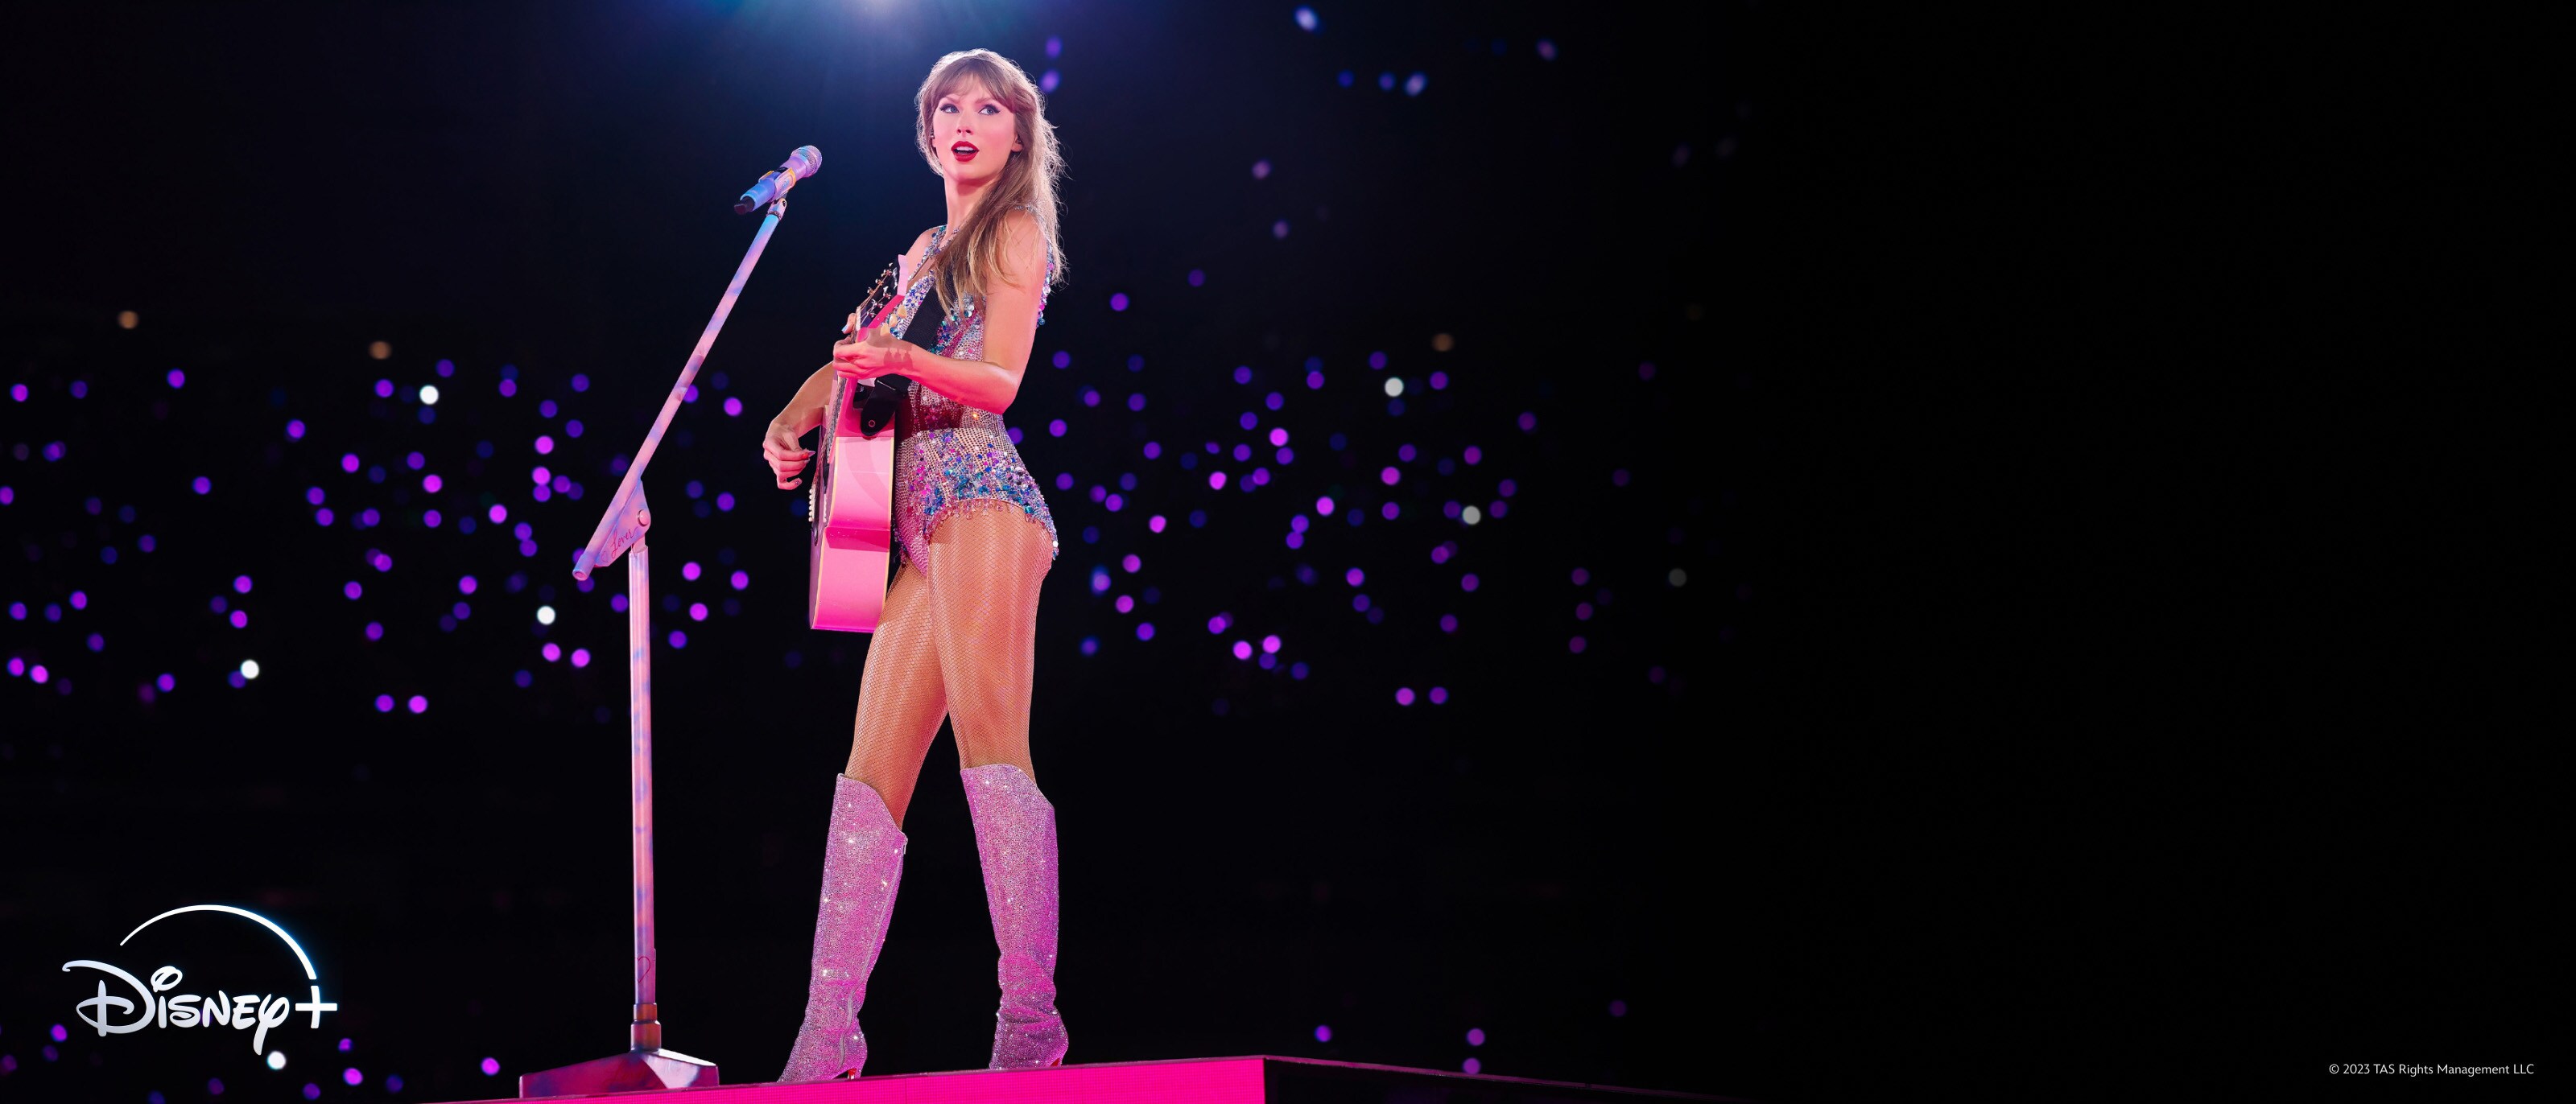 Taylor Swift | The Eras Tour (Taylor's Version) est maintenant disponible sur Disney+